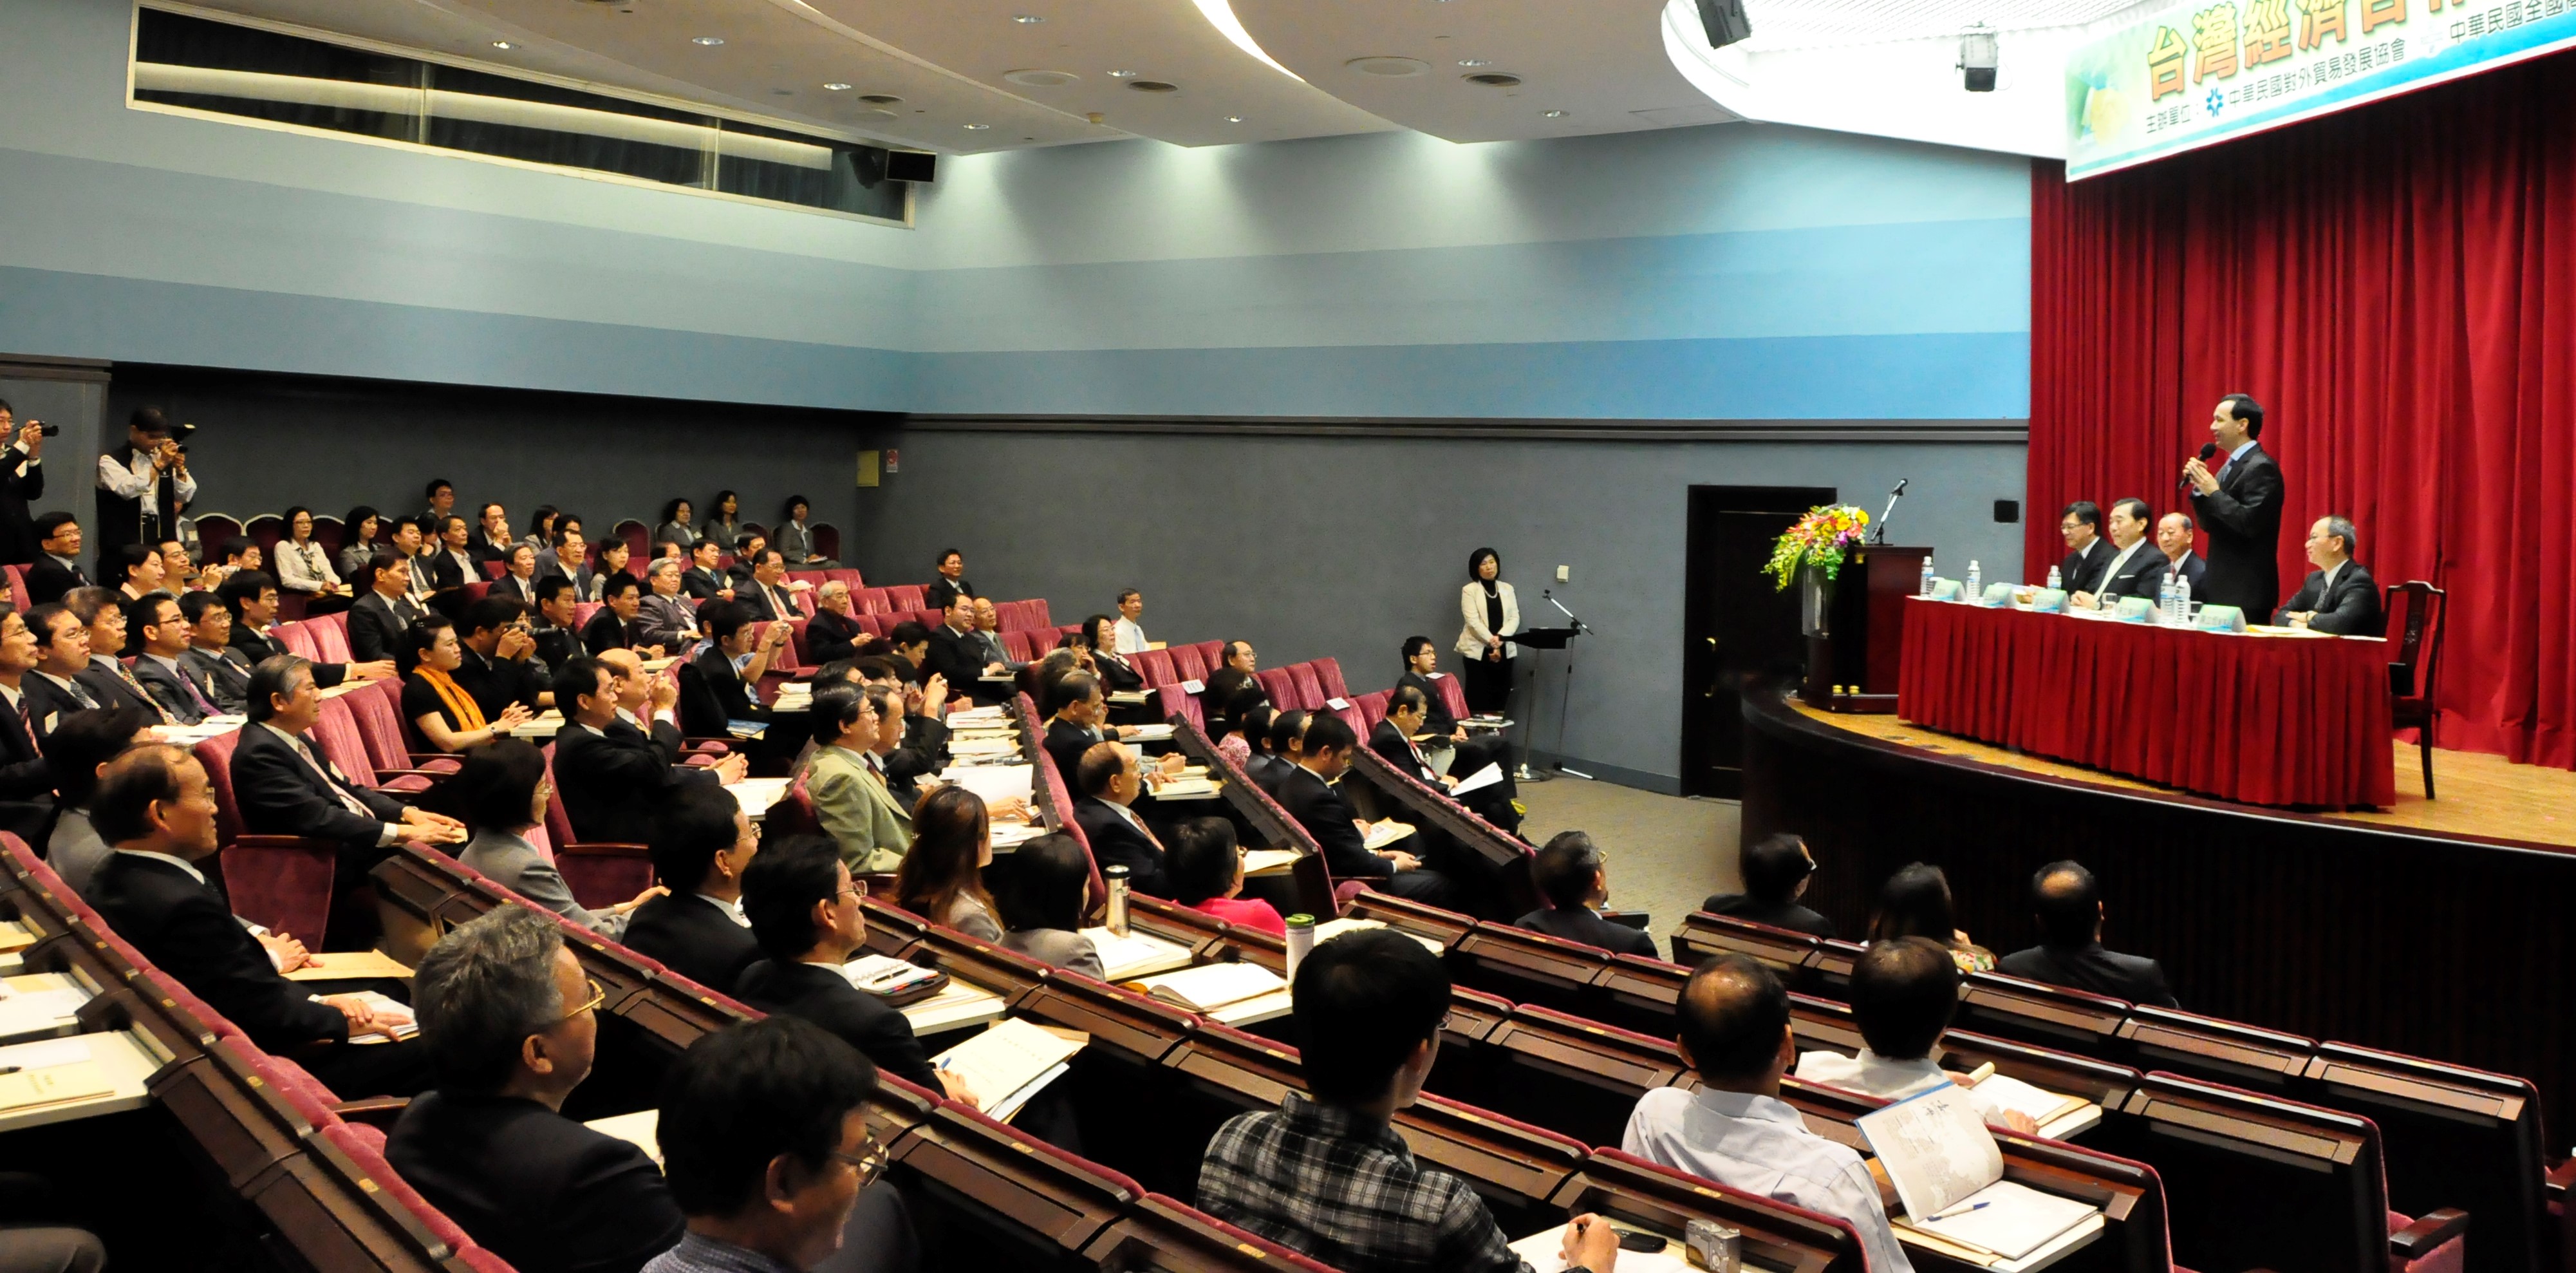 P.37第一排 - 2009「台灣新經濟建設論壇」於台北國際會議中心舉行.jpg